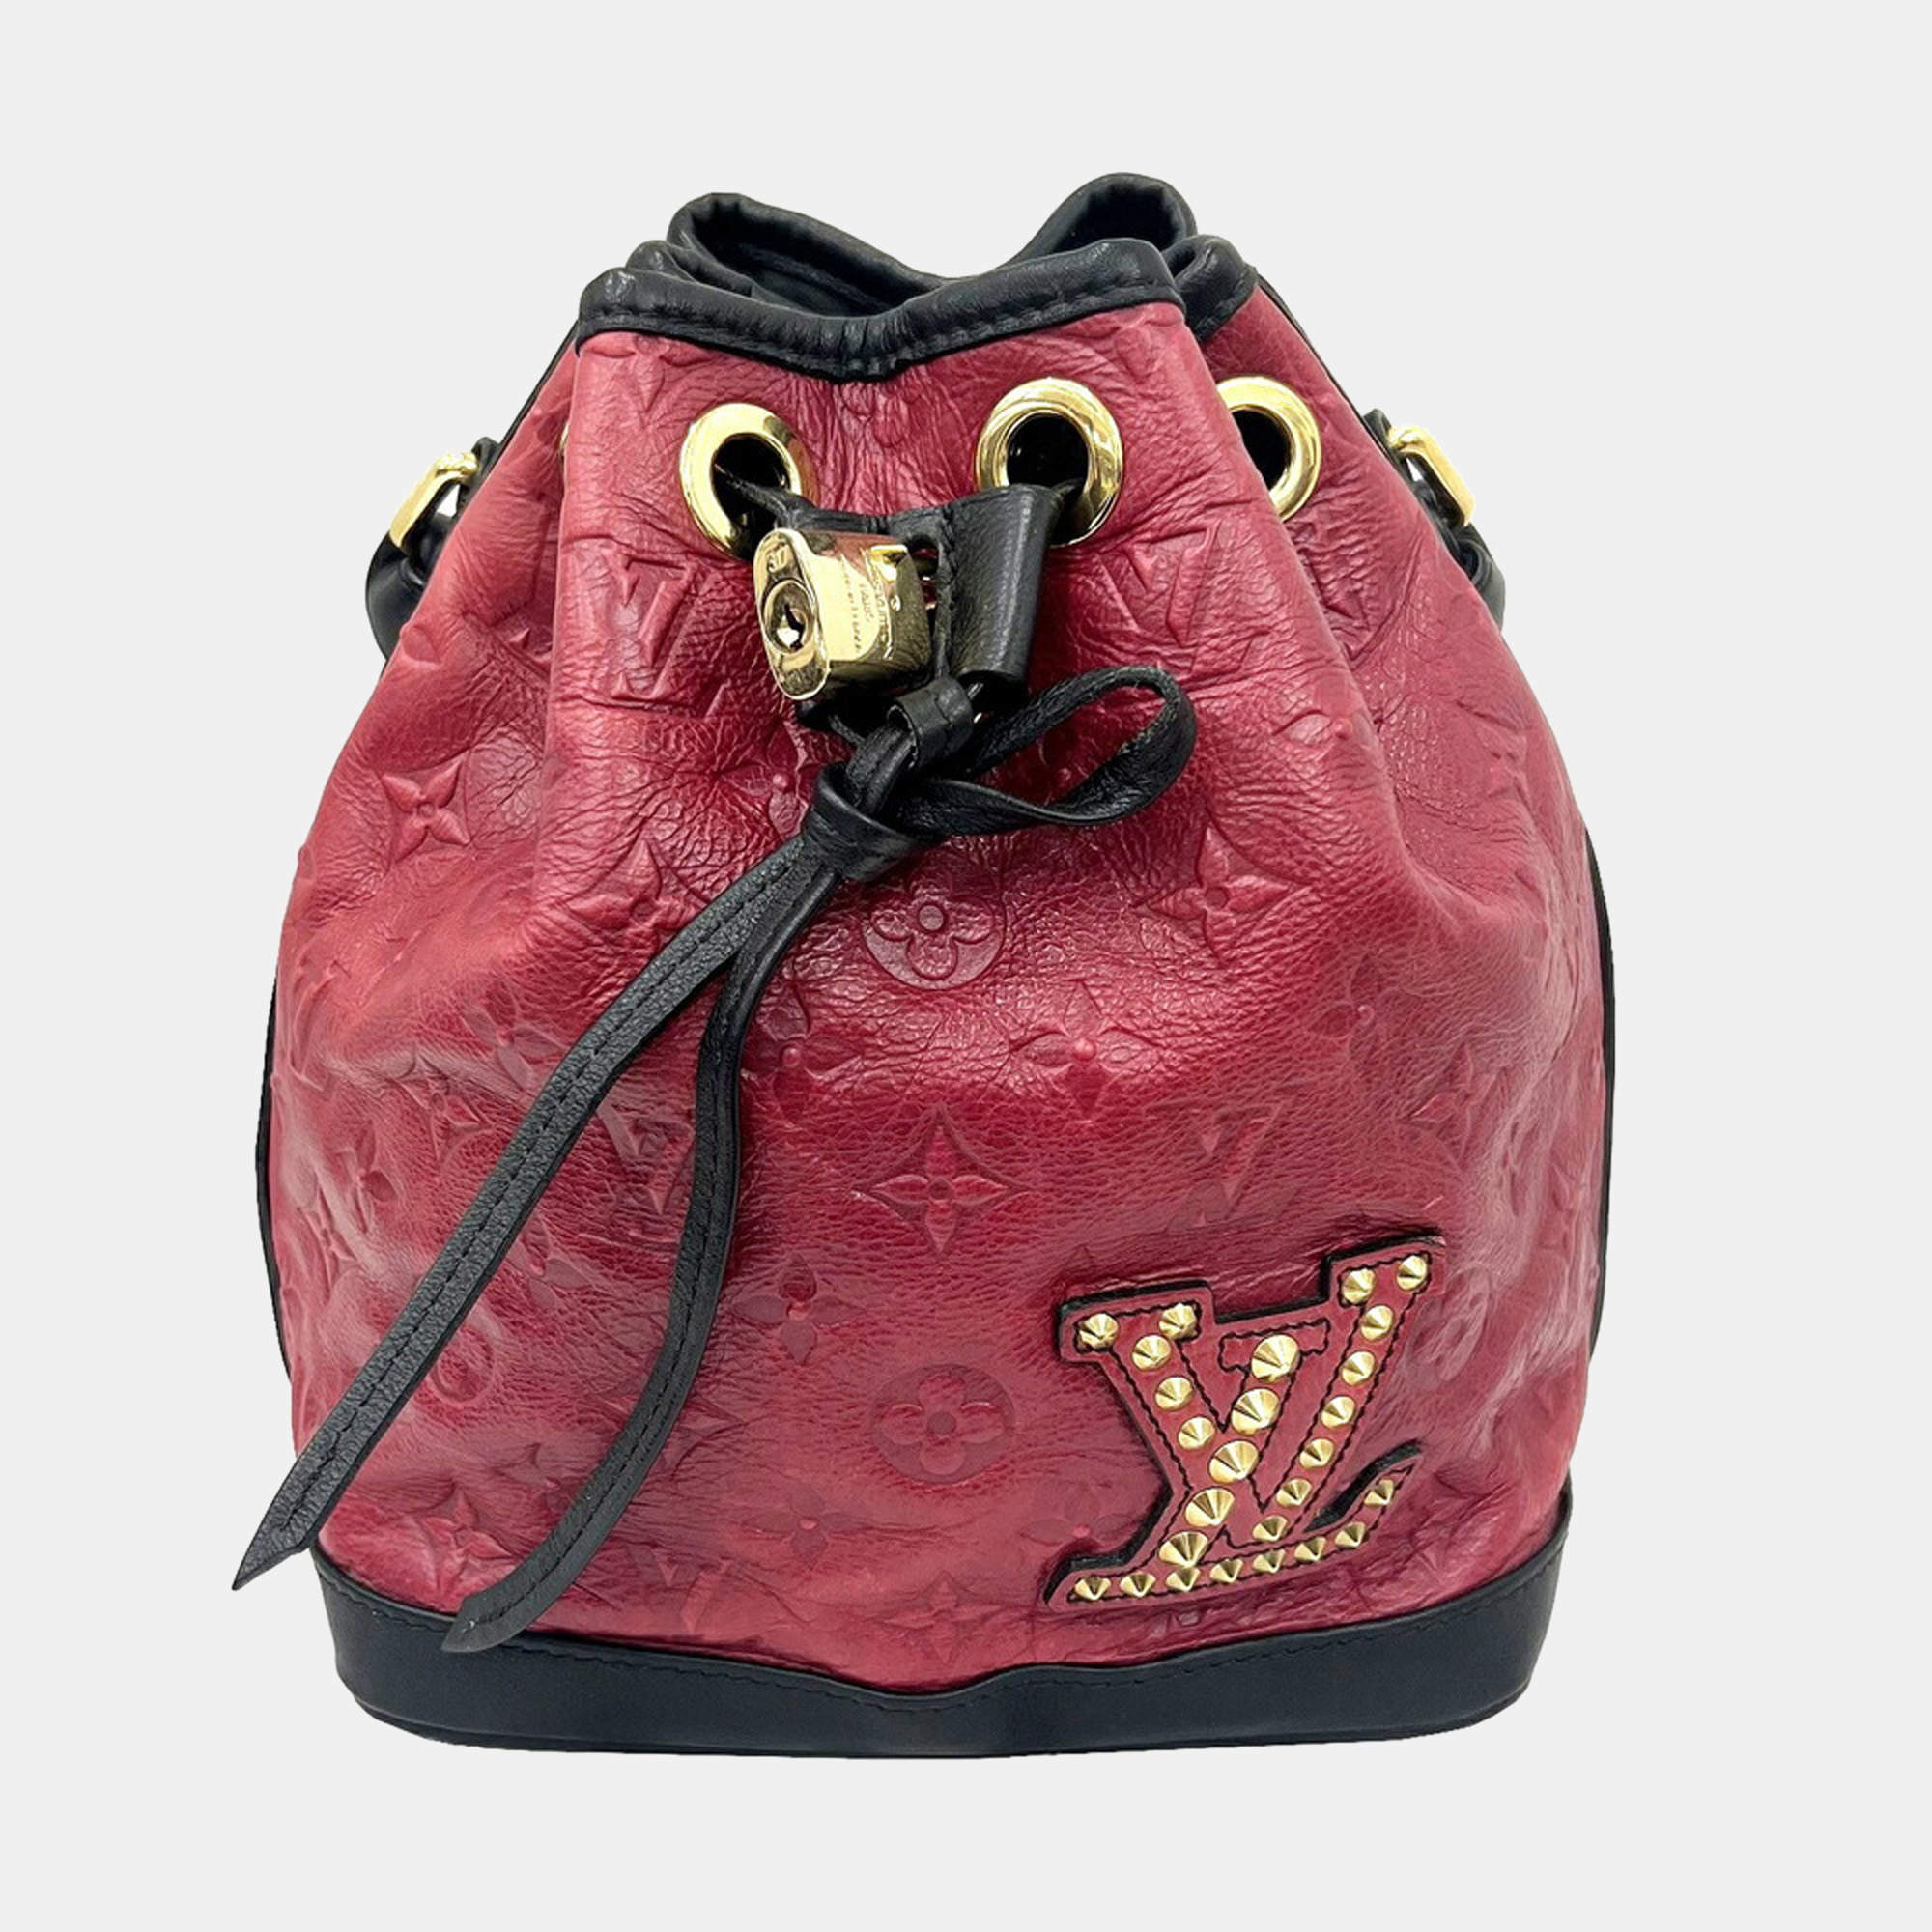 Monogram Neo Noe?  Bags, Bags designer fashion, Fashion bags